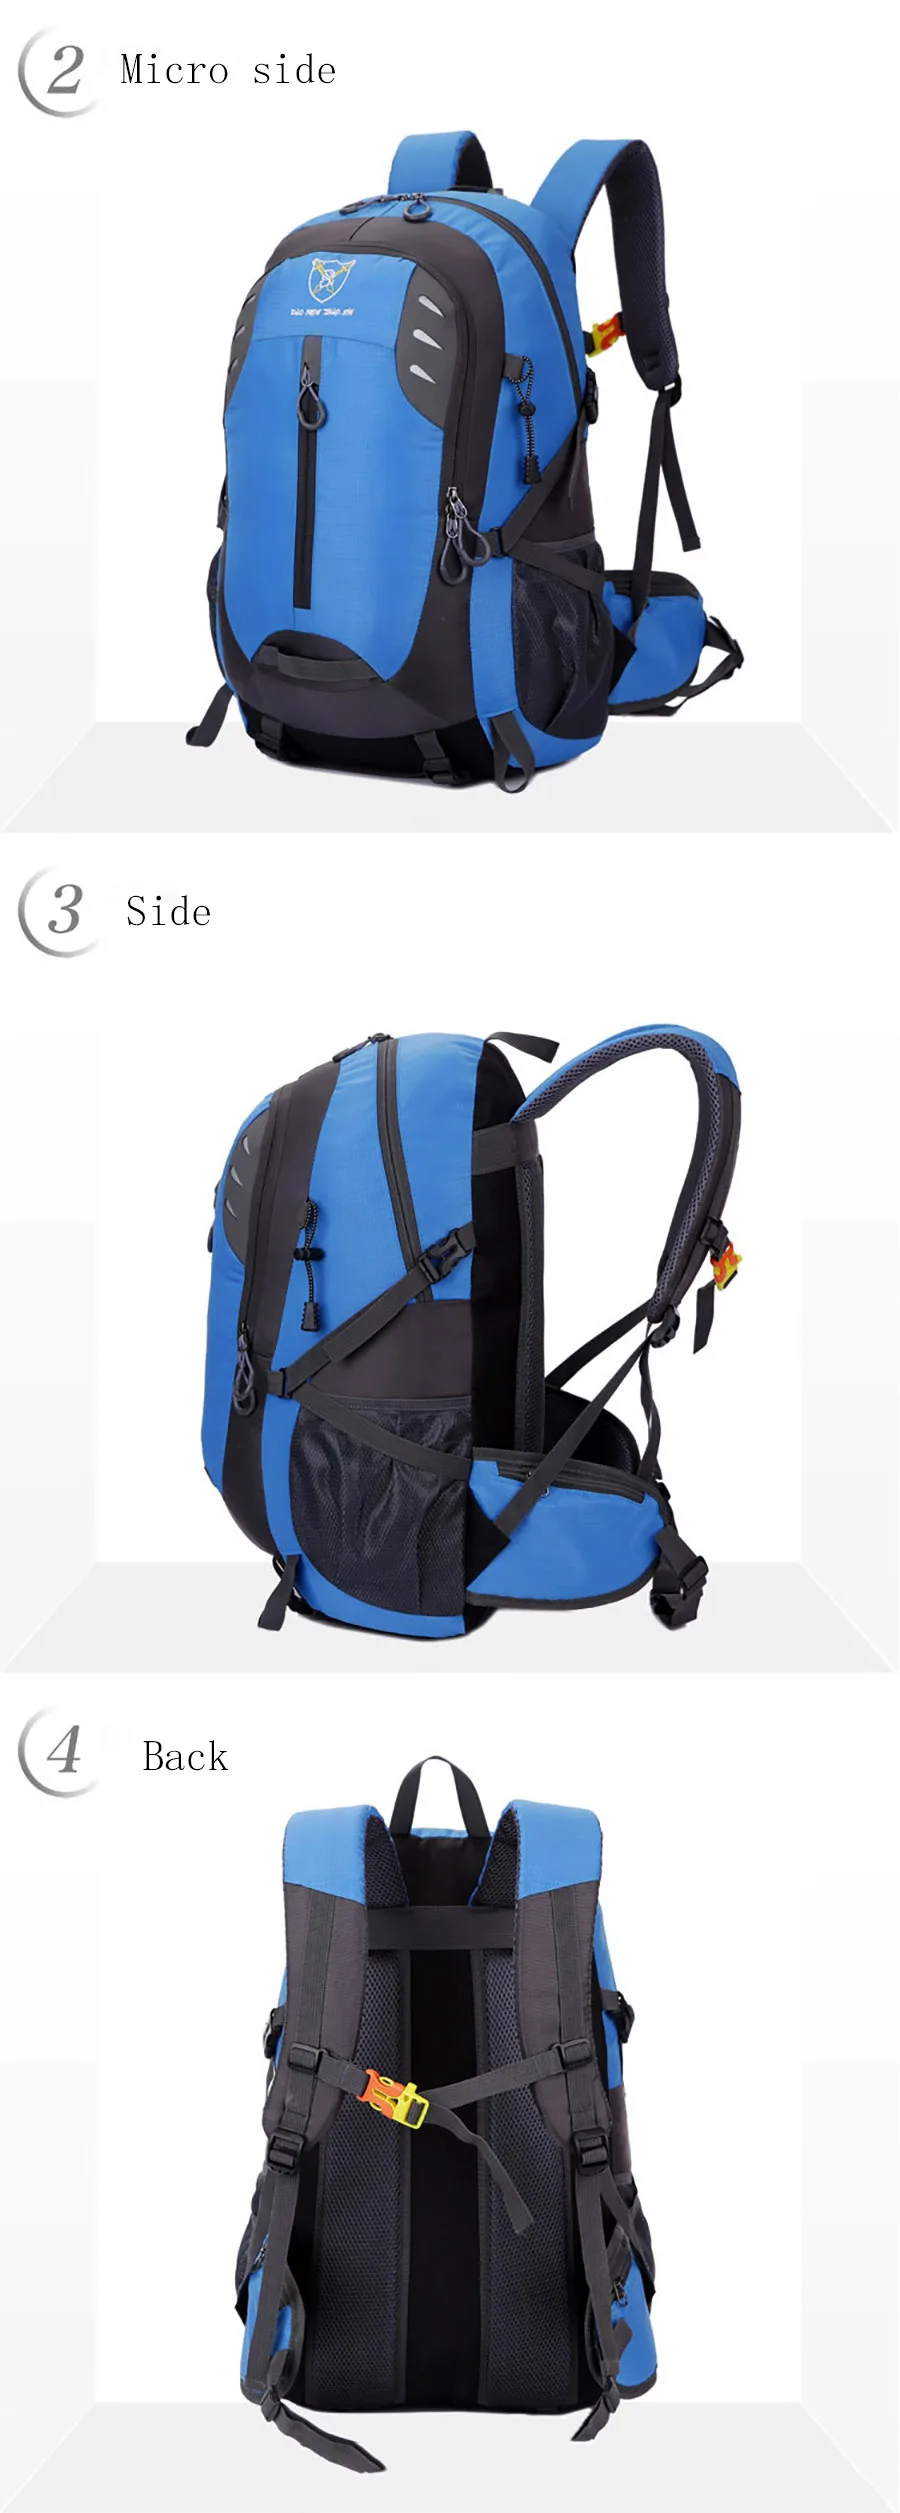 Новый пеший Туризм Сумки Спорт на открытом воздухе рюкзак путешествия рюкзаки водостойкий прогулки кемпинг рюкзак облегченный дышащая